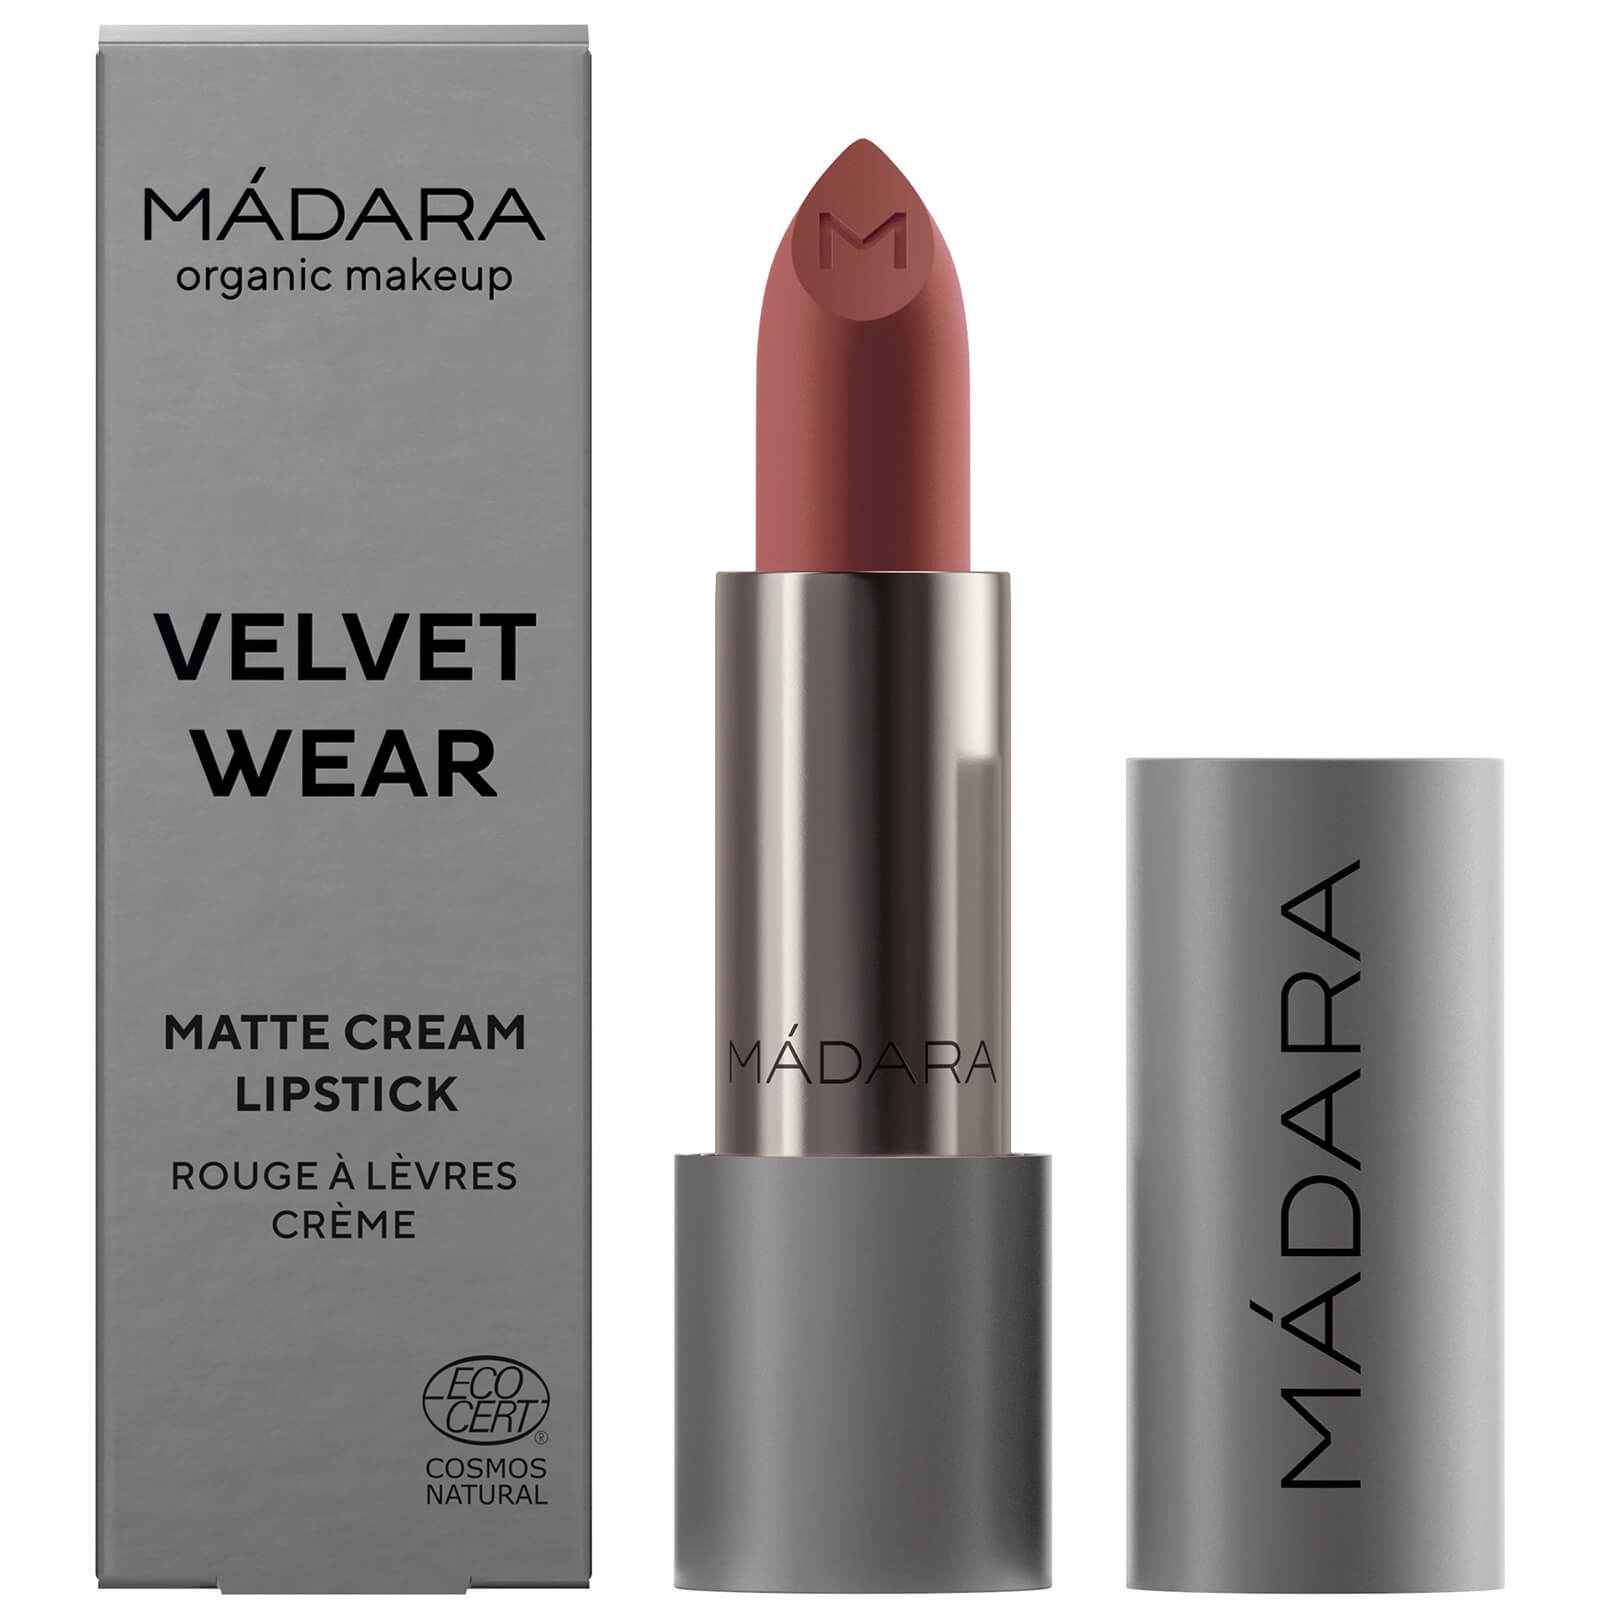 MÁDARA Velvet Wear Matte Cream Lipstick 3.8g (Various Shades) - #32 Warm Nude